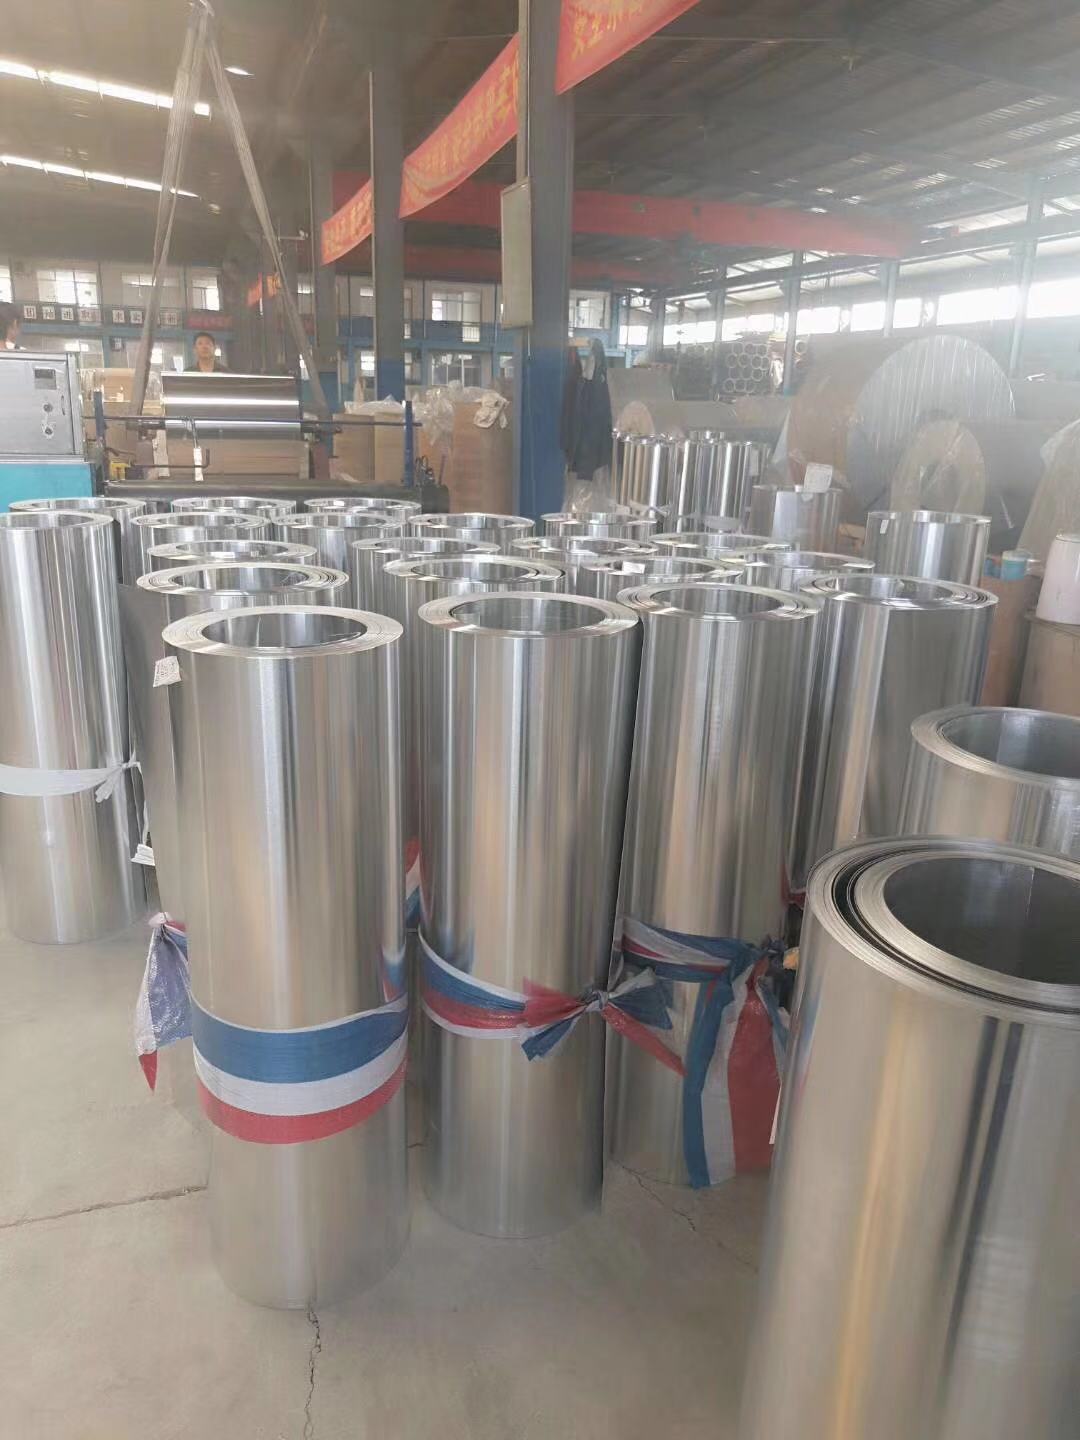 滄州採購保溫鋁卷保溫鋁皮廠家直銷